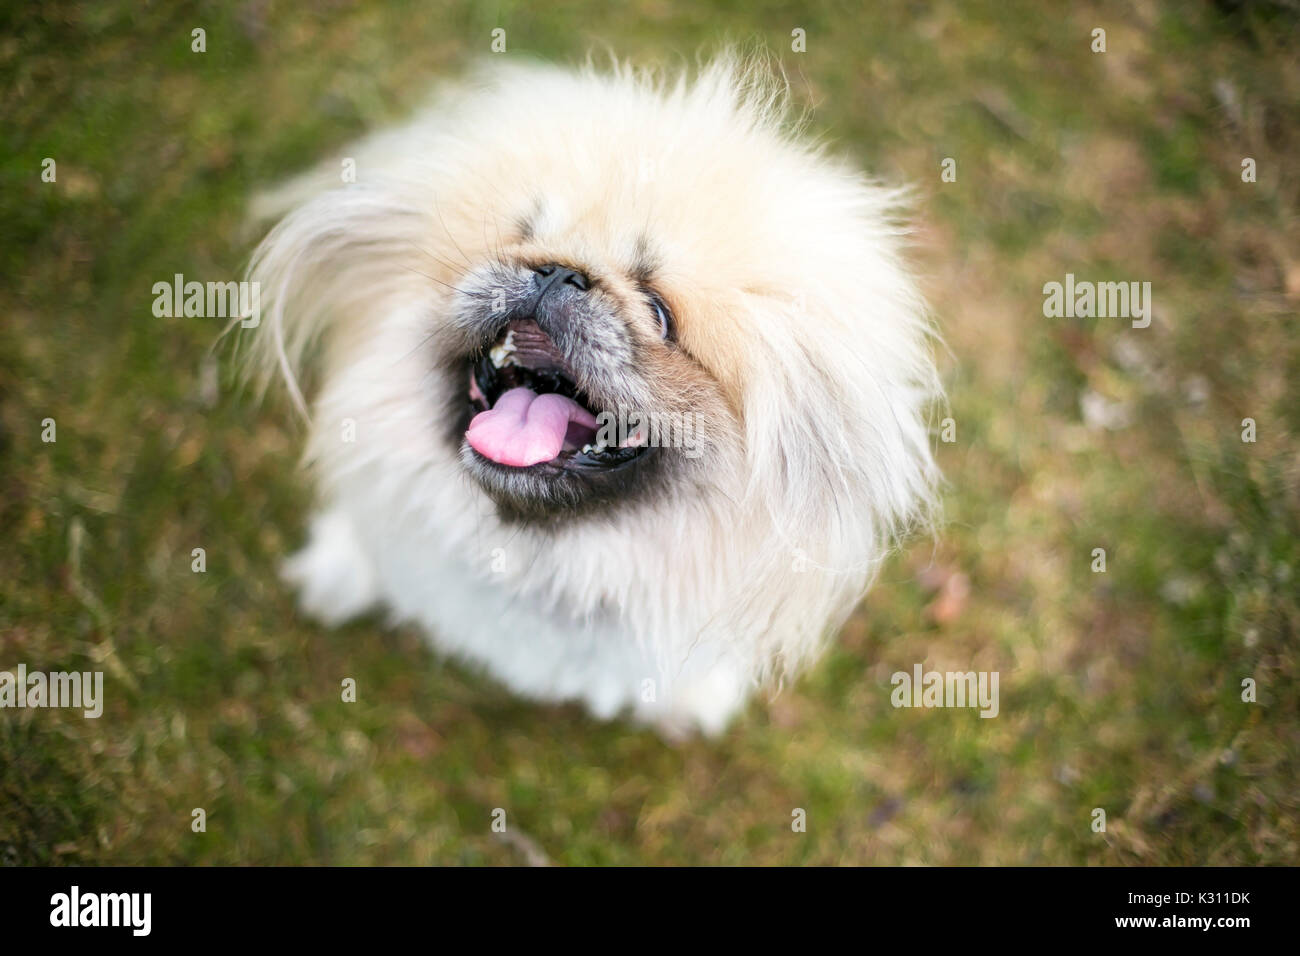 Fuzzy purebred Pekingese dog Stock Photo